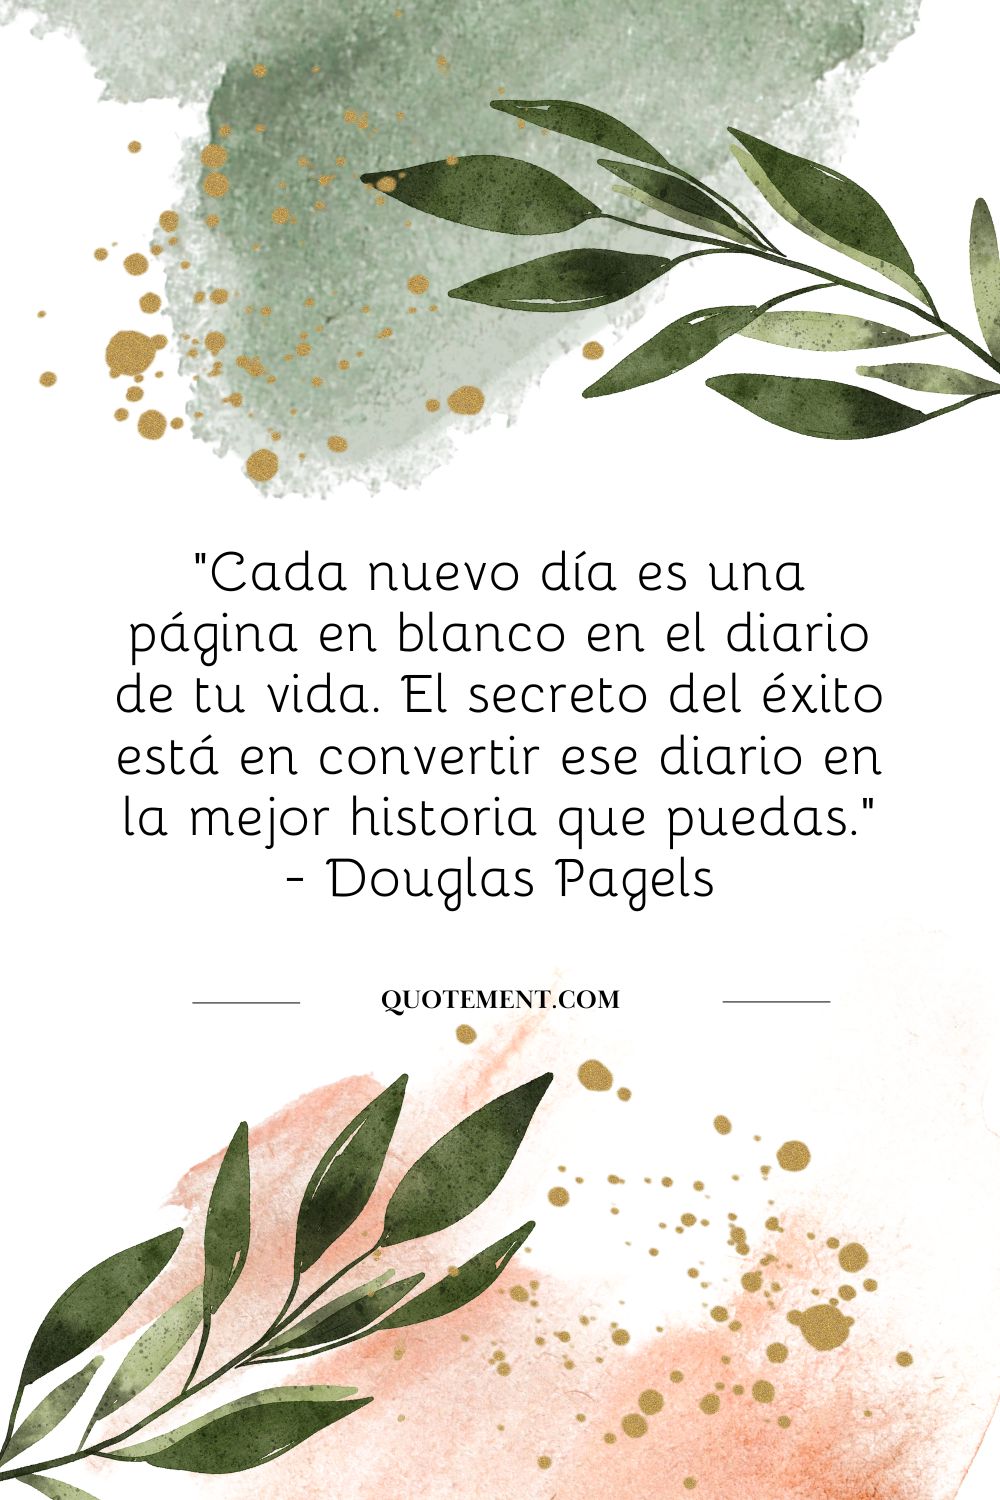 "Cada nuevo día es una página en blanco en el diario de tu vida. El secreto del éxito está en convertir ese diario en la mejor historia que puedas." - Douglas Pagels